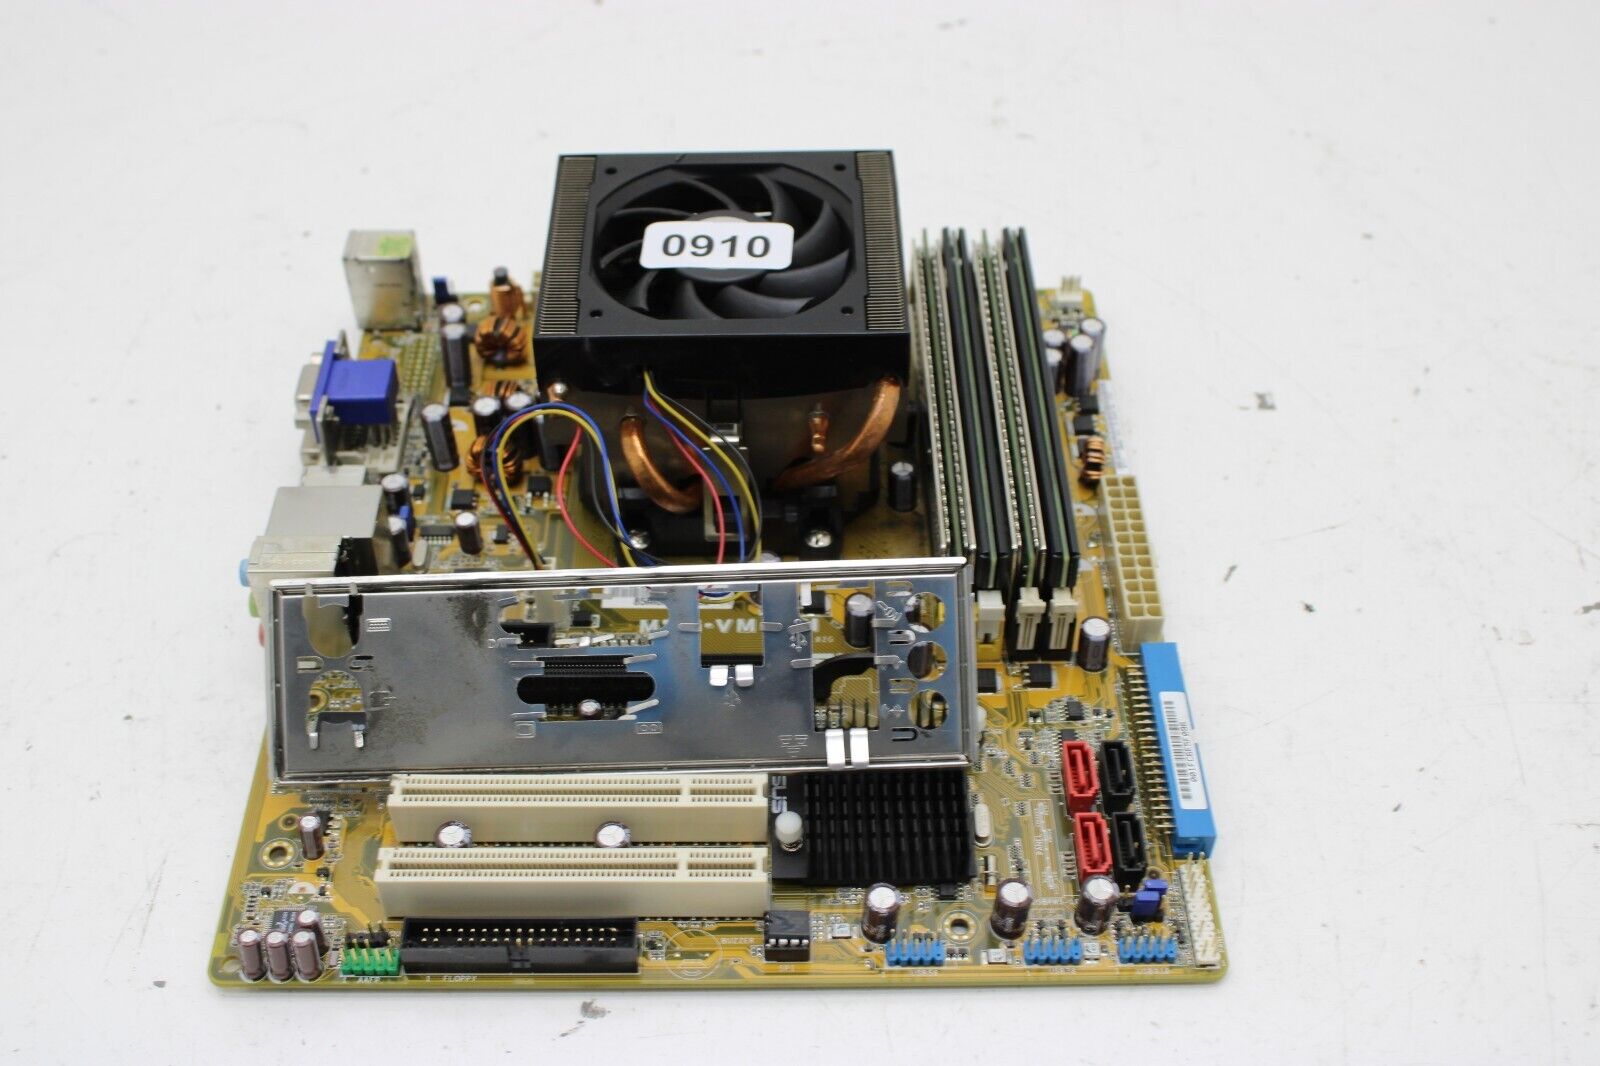 Asus M2N-VM DVI Motherboard w/ AMD Athlon 640x2 6000+ @3.1GHz 8GB Ram - CMOS Bad